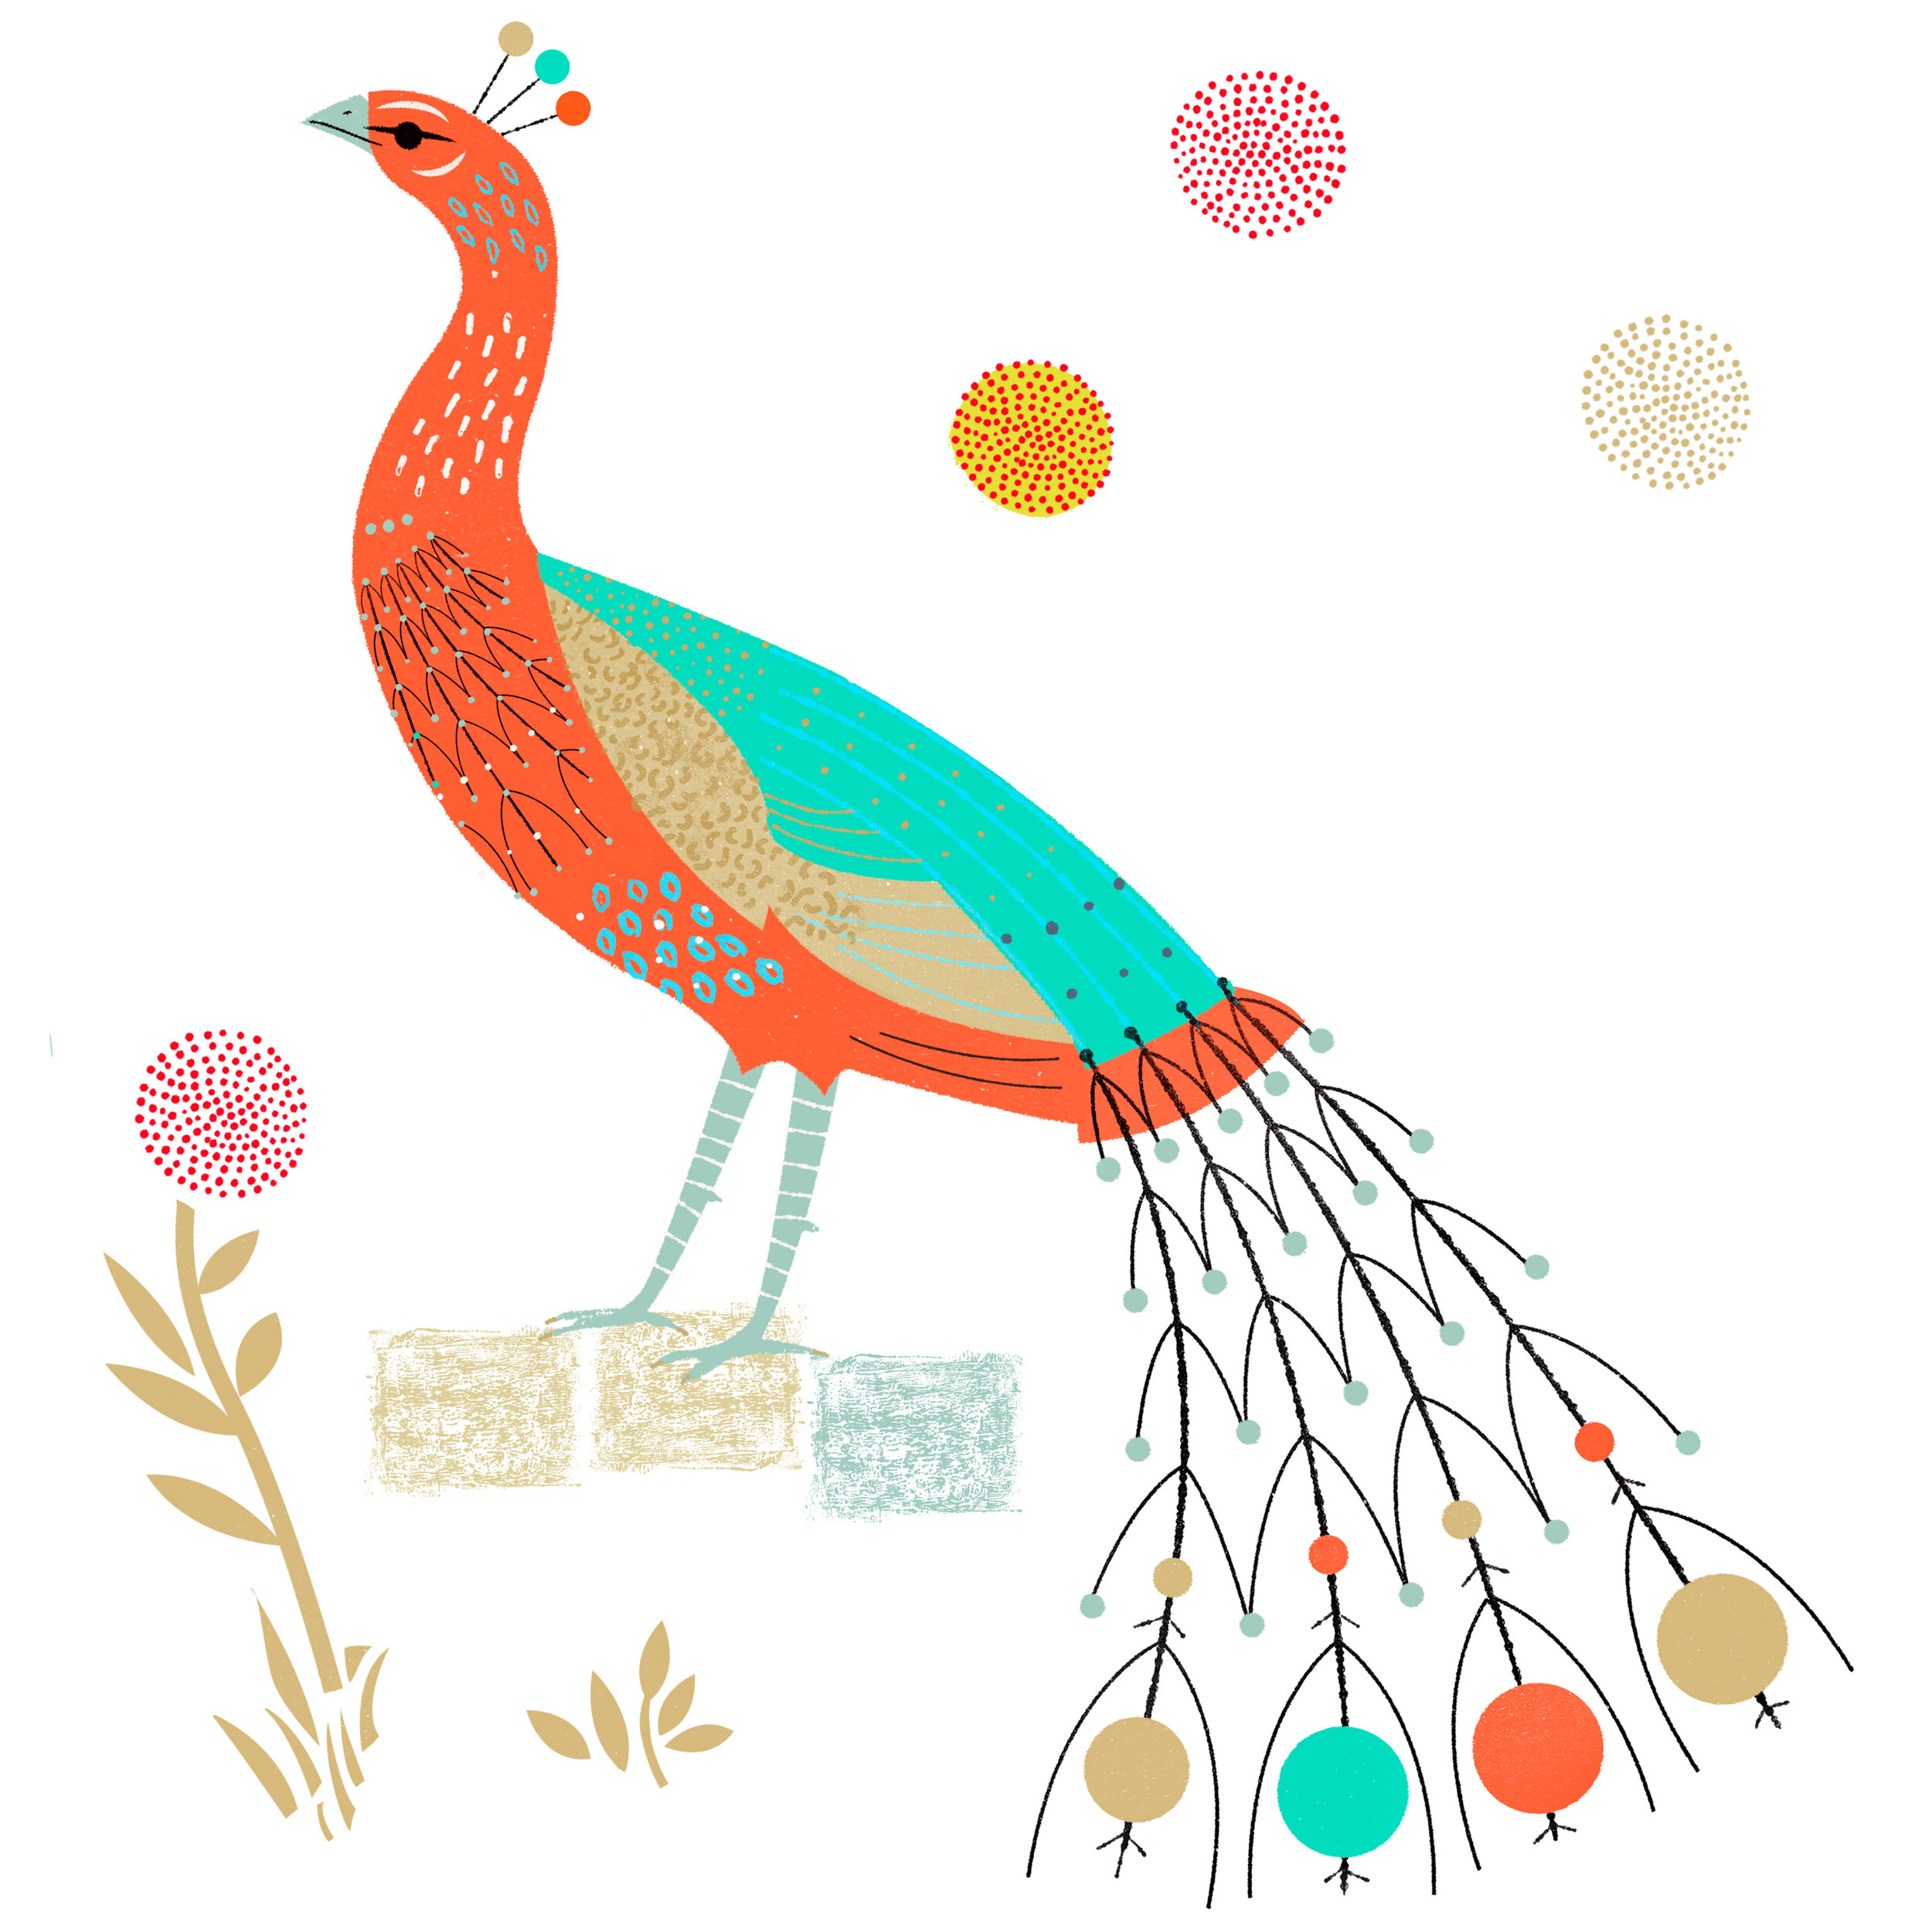 peacock_Luckens_illustration_Jan_Konopka_02.jpg